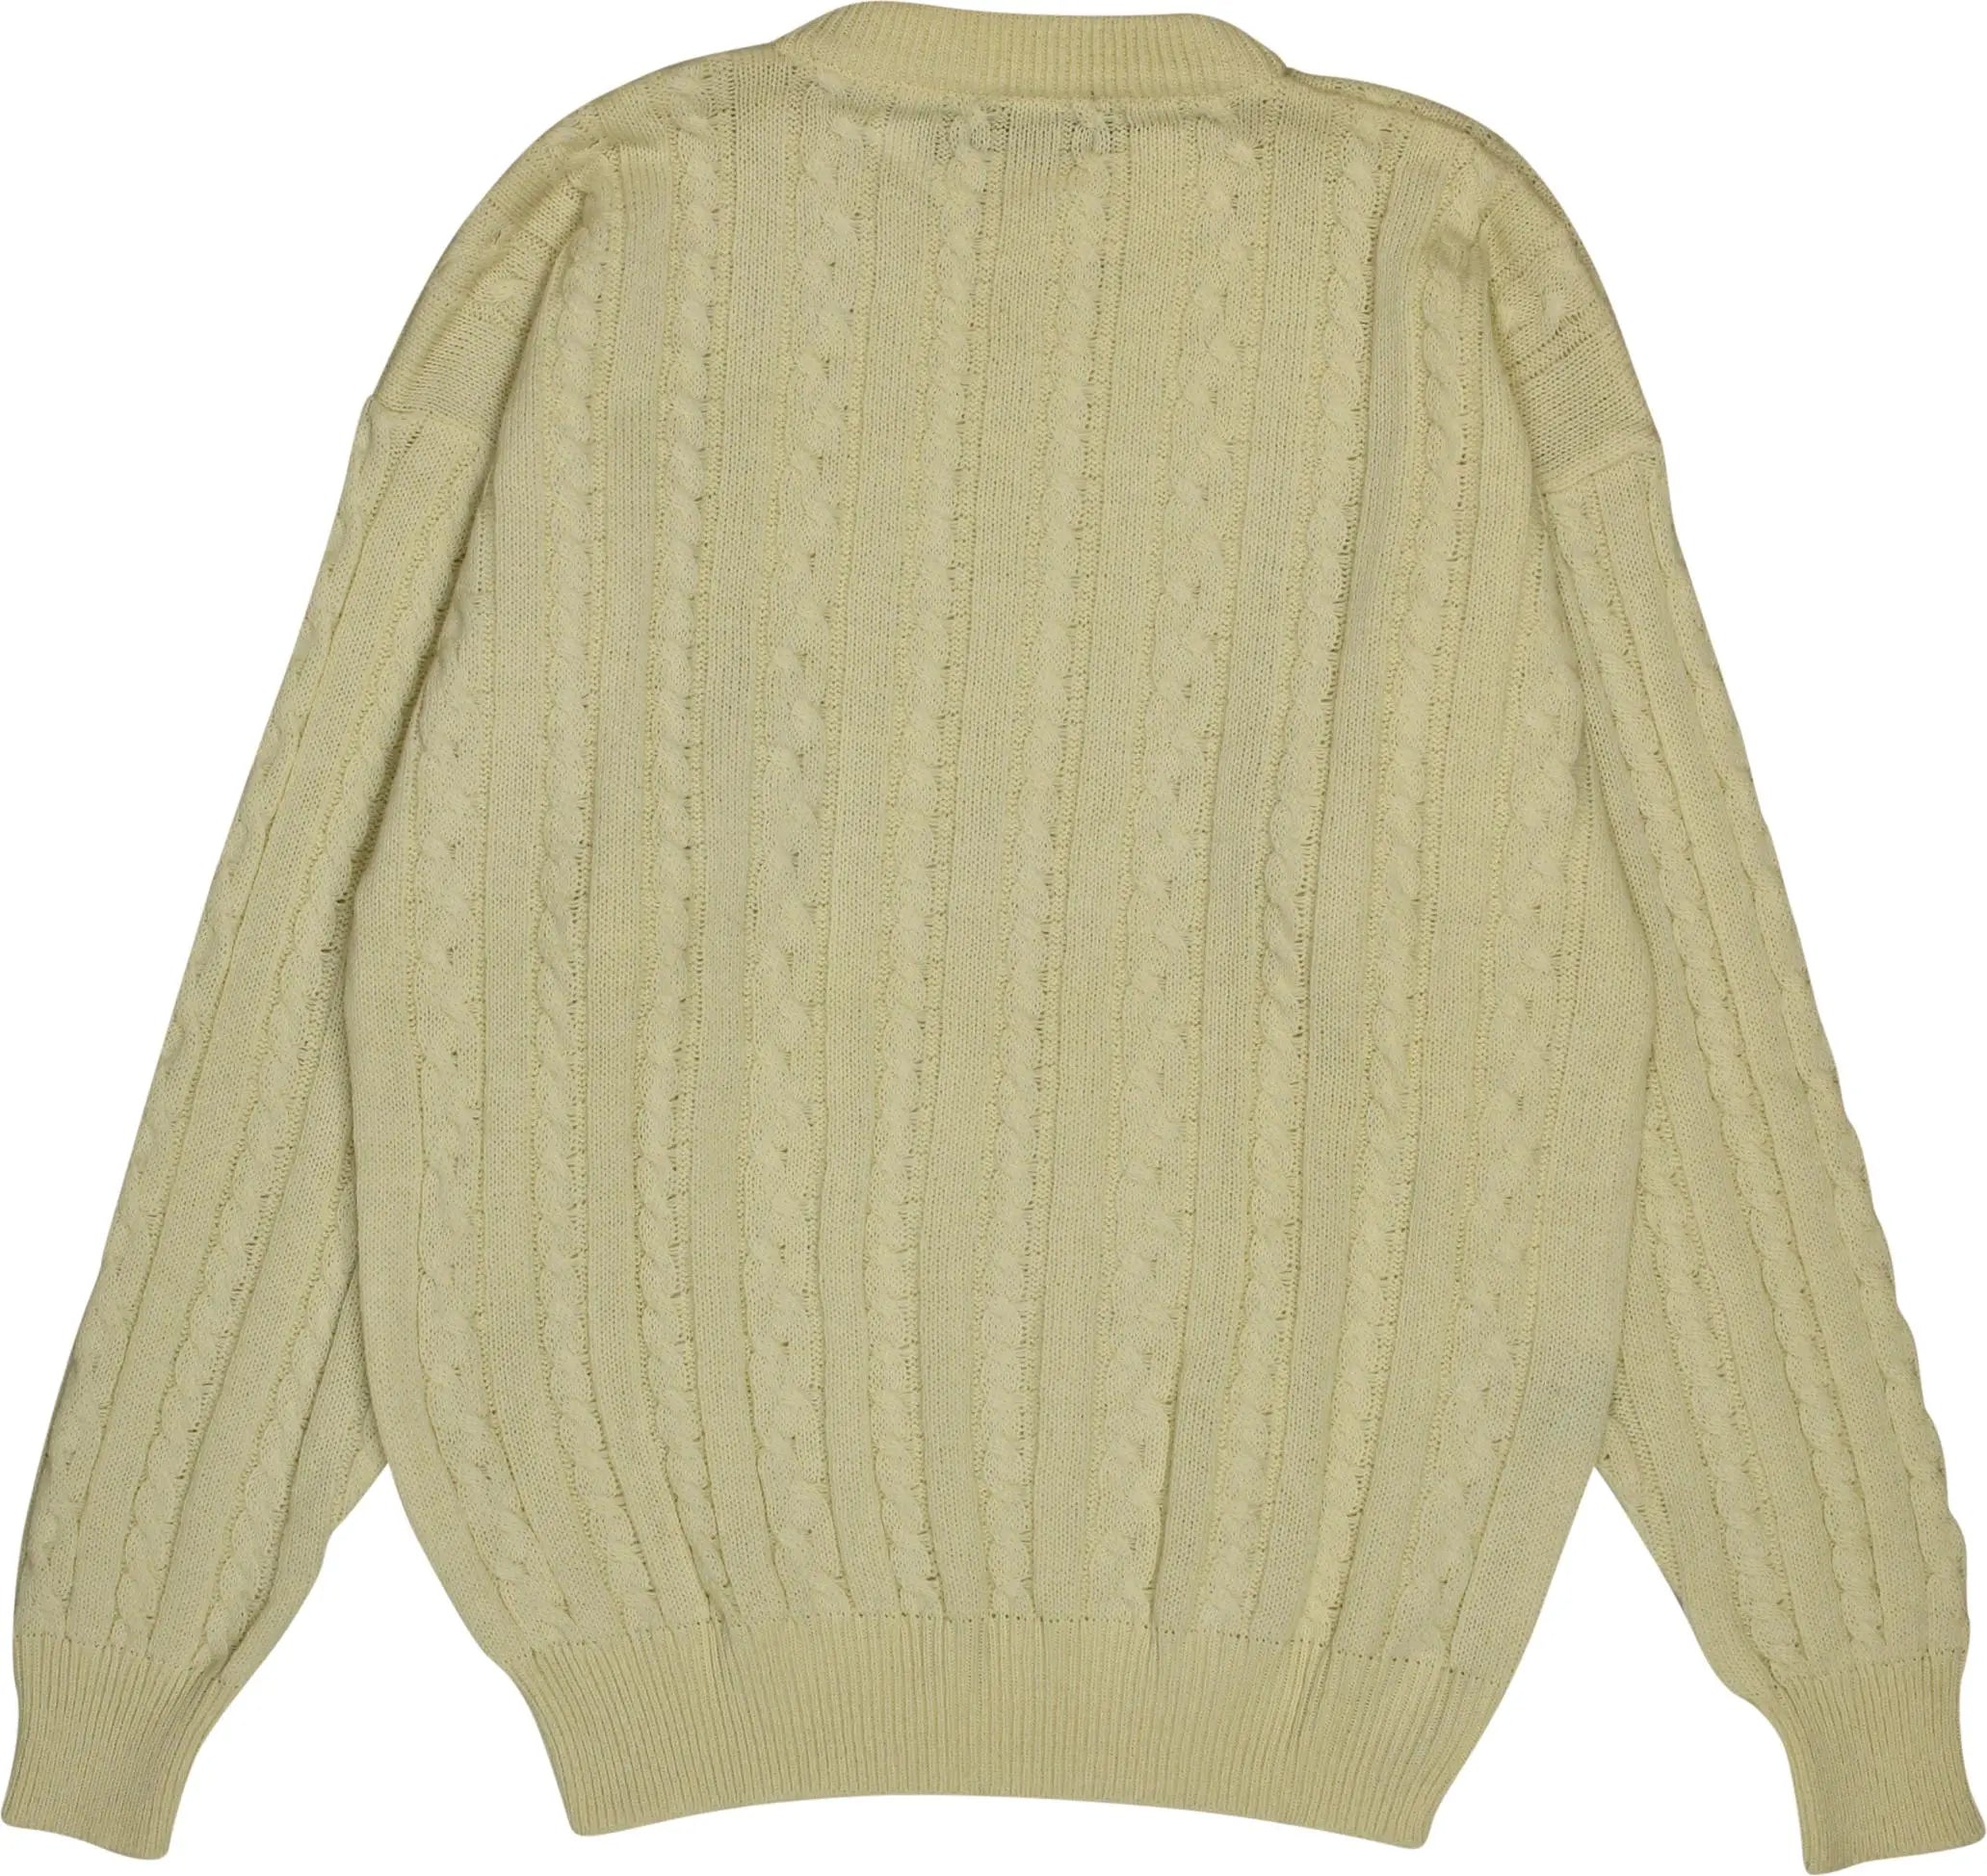 K Sabasian K - Cream Wool Blend Jumper- ThriftTale.com - Vintage and second handclothing